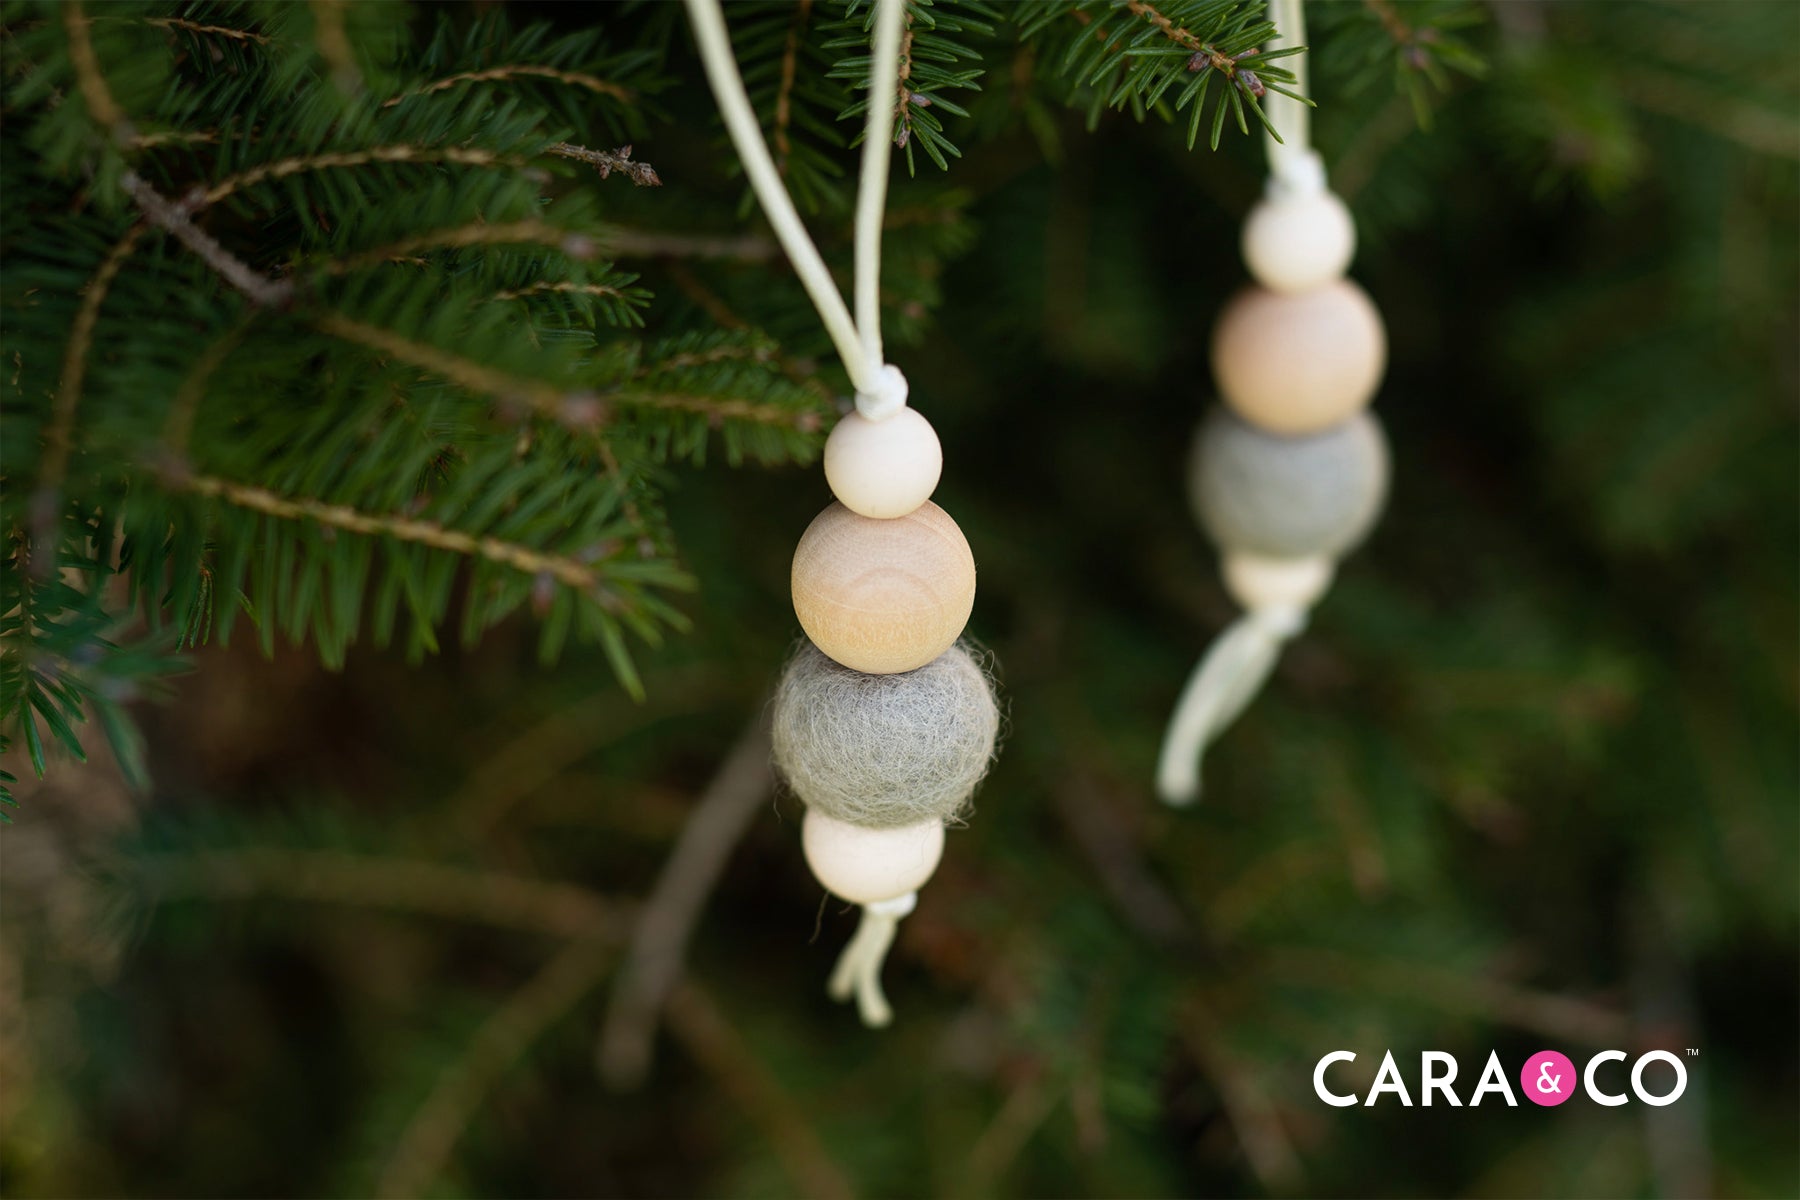 Felt & Wood Bead Tree Ornament - Cara & Co DIY Tutorials